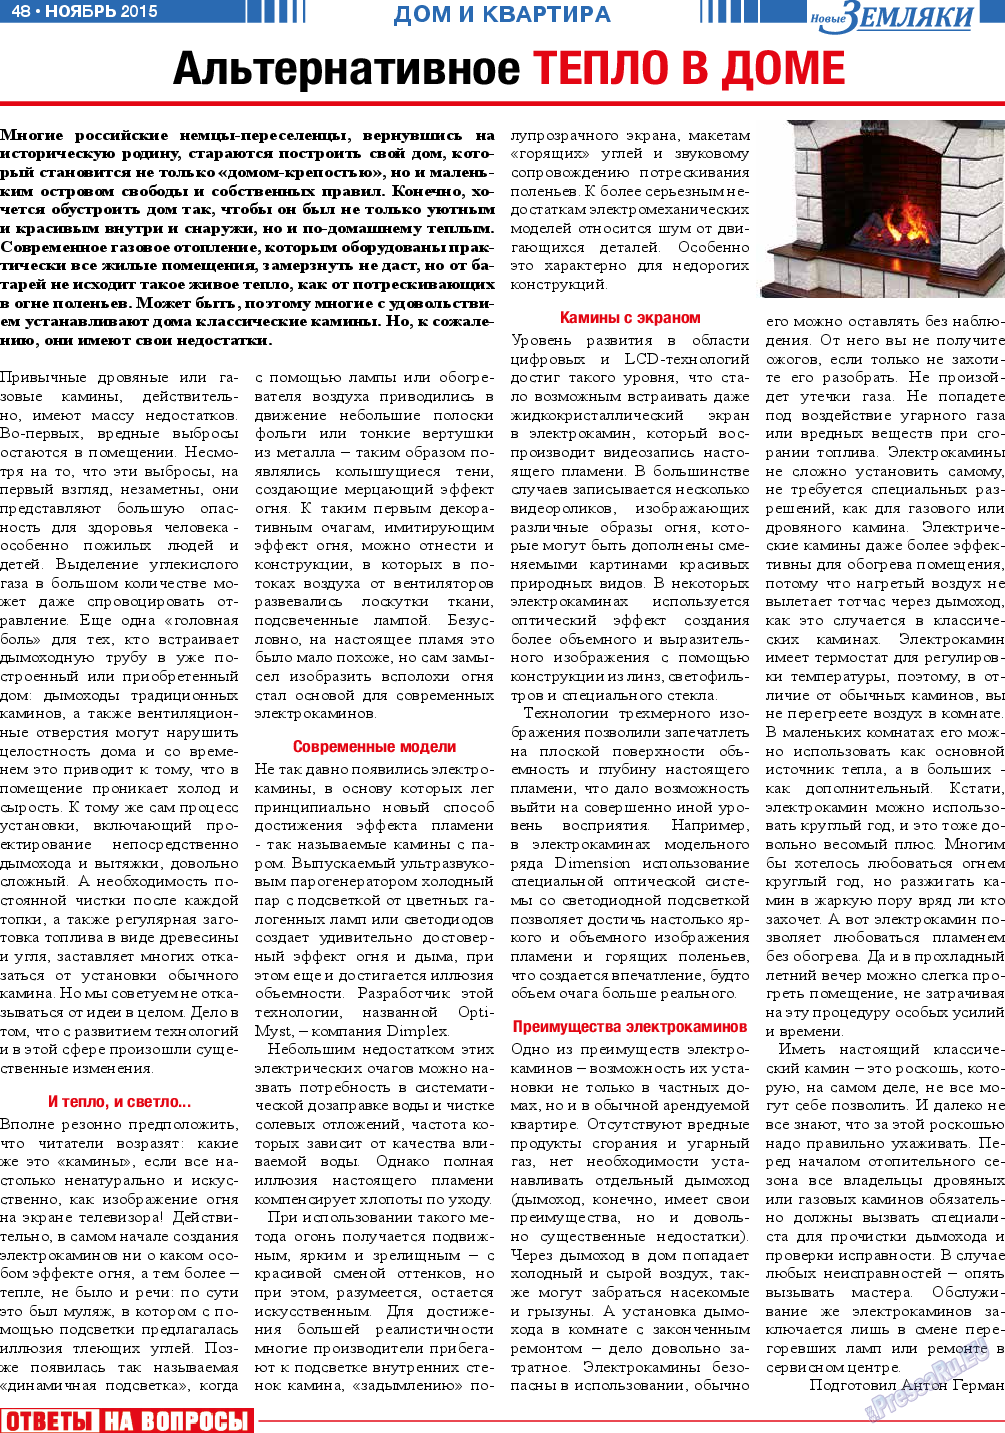 Новые Земляки, газета. 2015 №11 стр.48